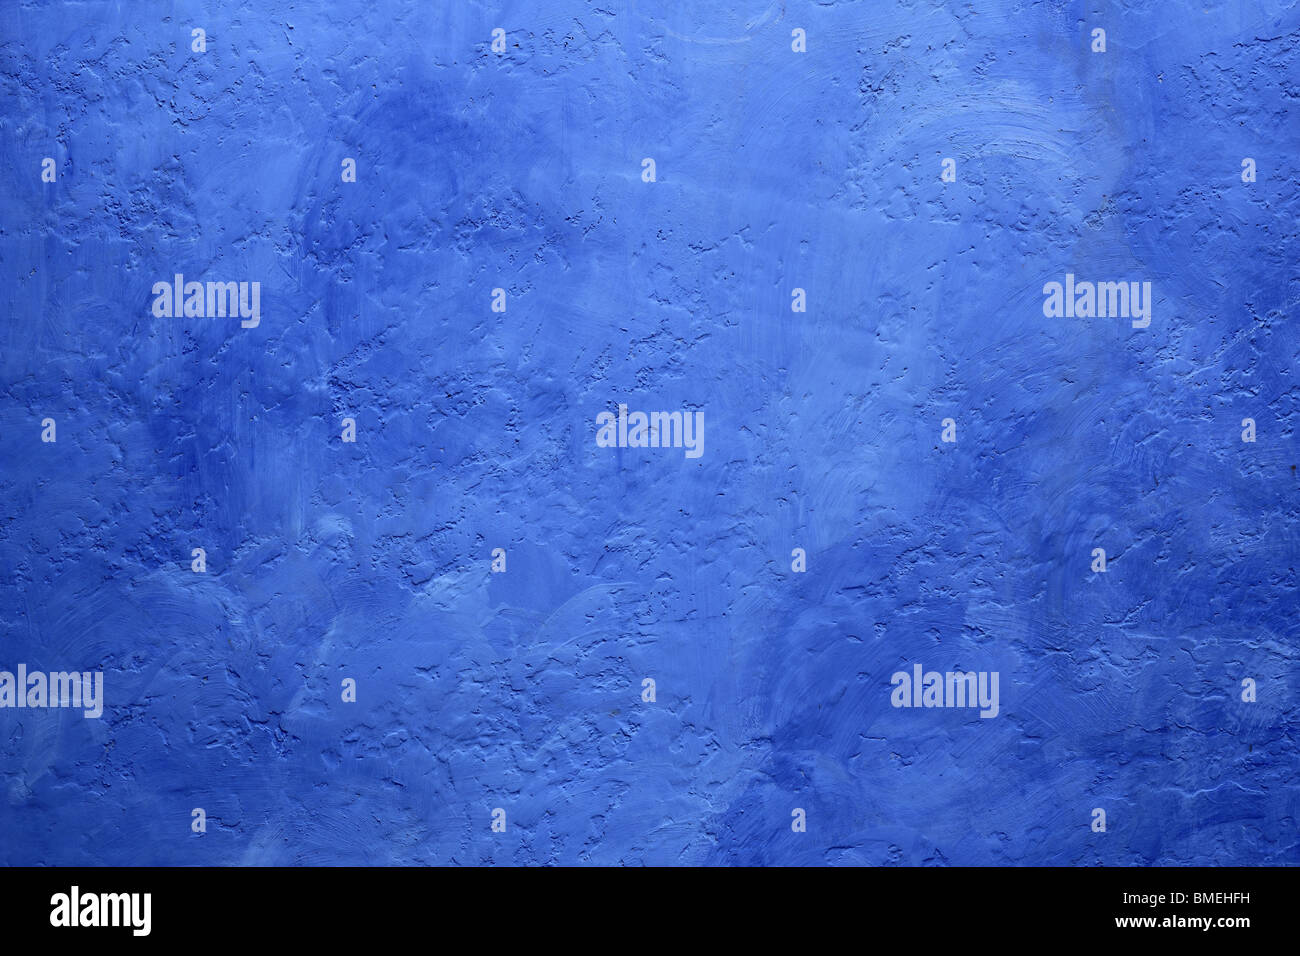 Grunge blau lackierten Wandbeschaffenheit Hintergrund mediterrane Häuser Stockfoto